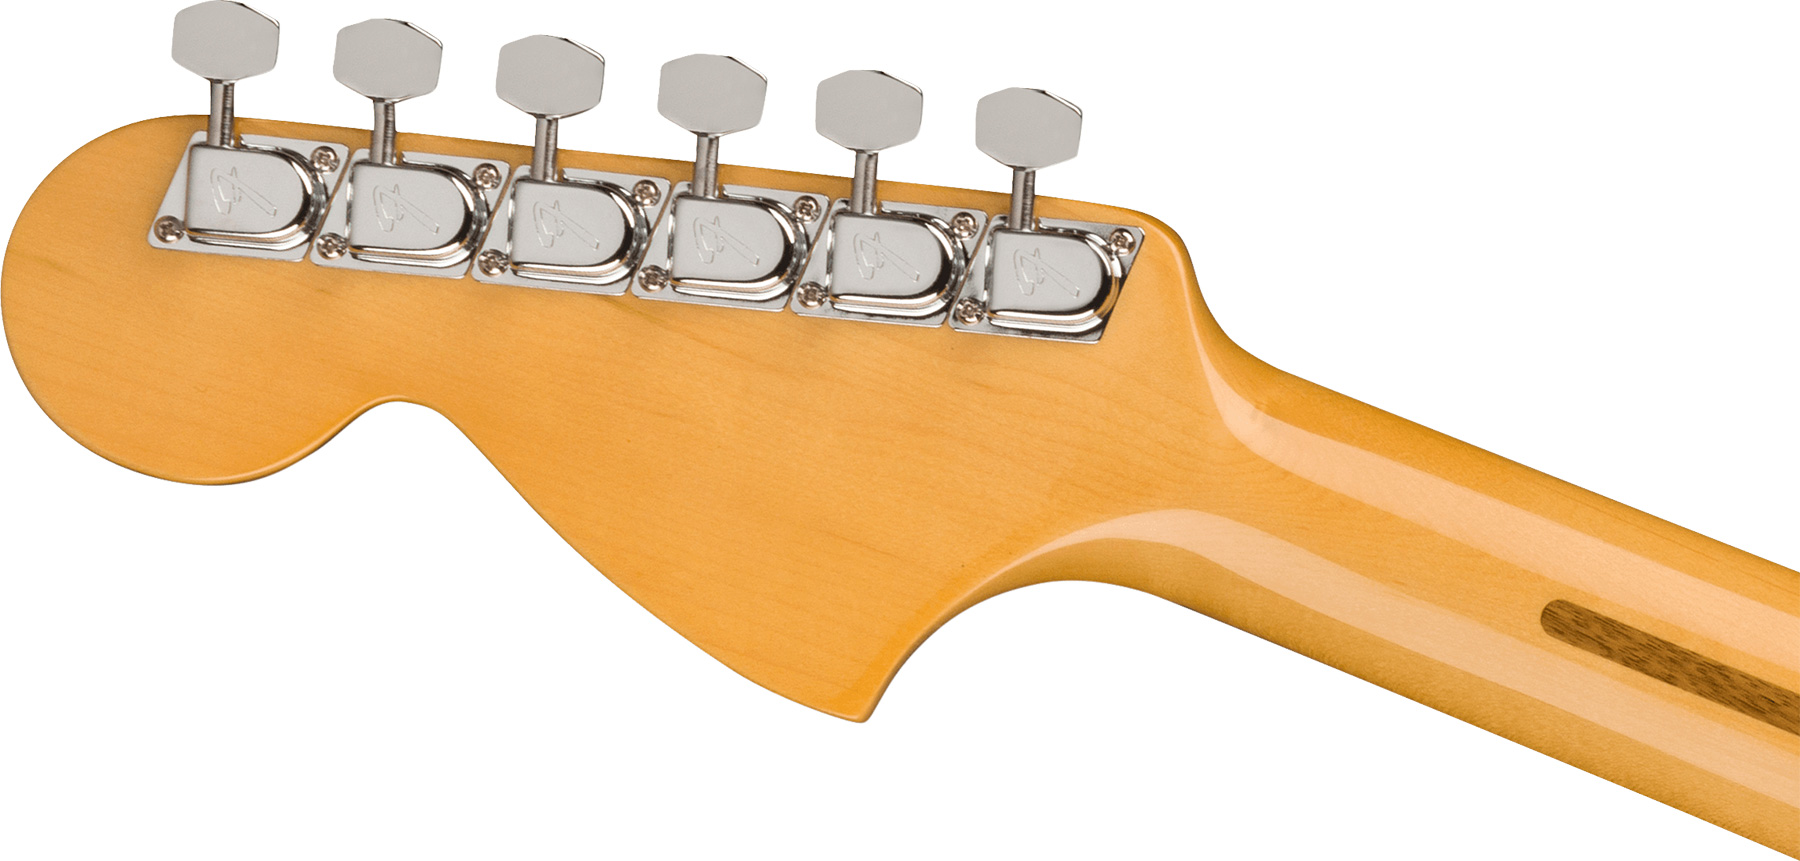 Fender Strat 1973 American Vintage Ii Usa 3s Trem Mn - Lake Placid Blue - Guitarra eléctrica con forma de str. - Variation 3